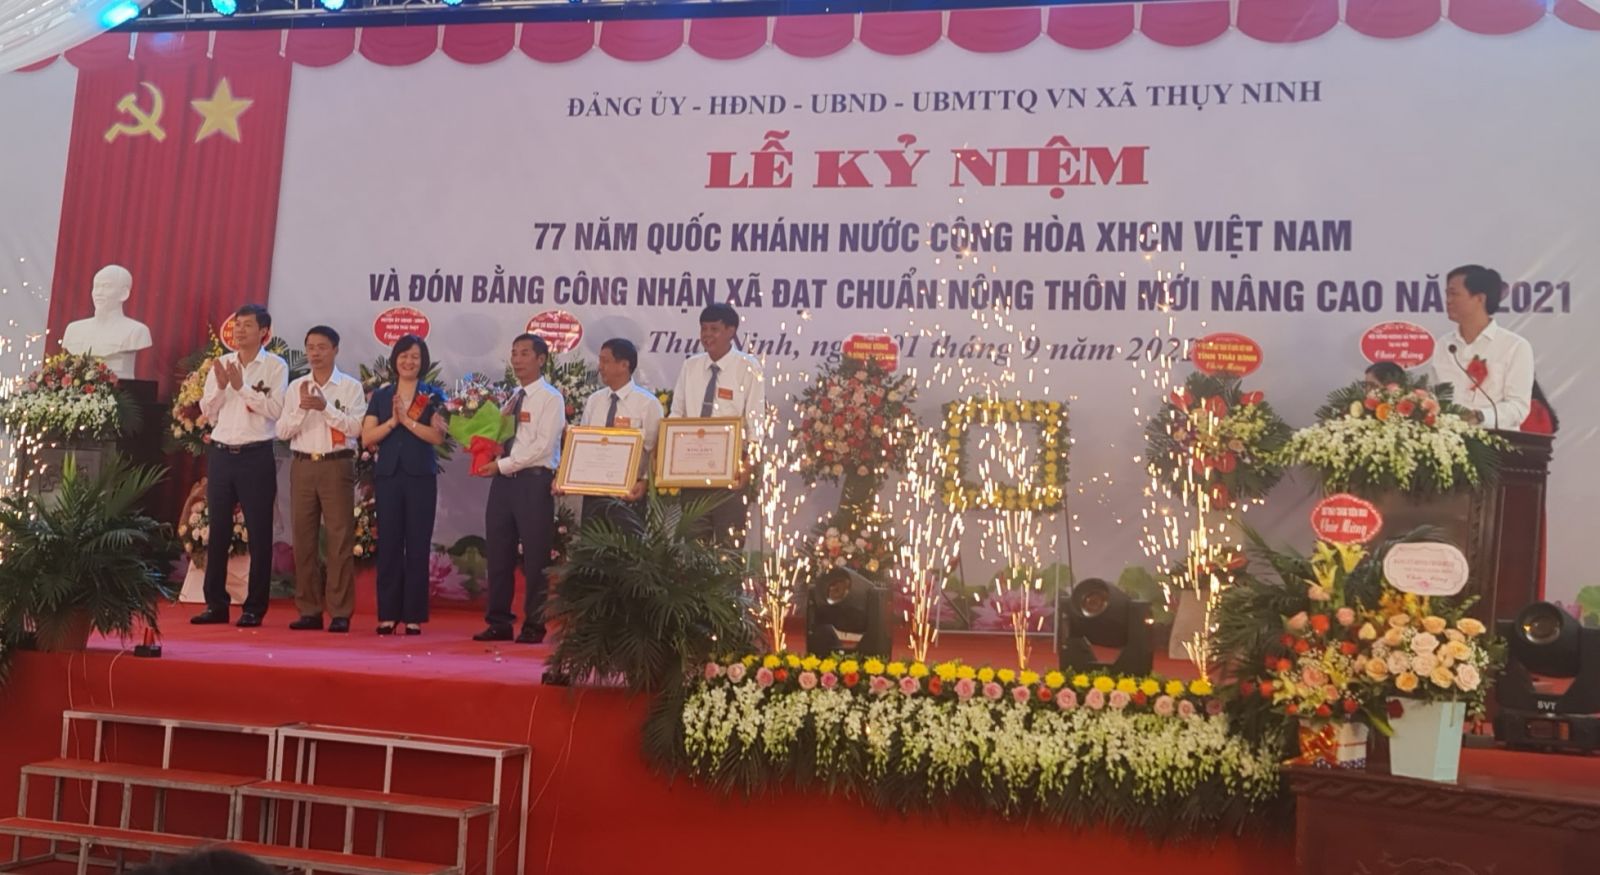 Lãnh đạo huyện Thái Thụy trao quyết định đạt chuẩn NTM nâng cao cho xã Thụy Ninh